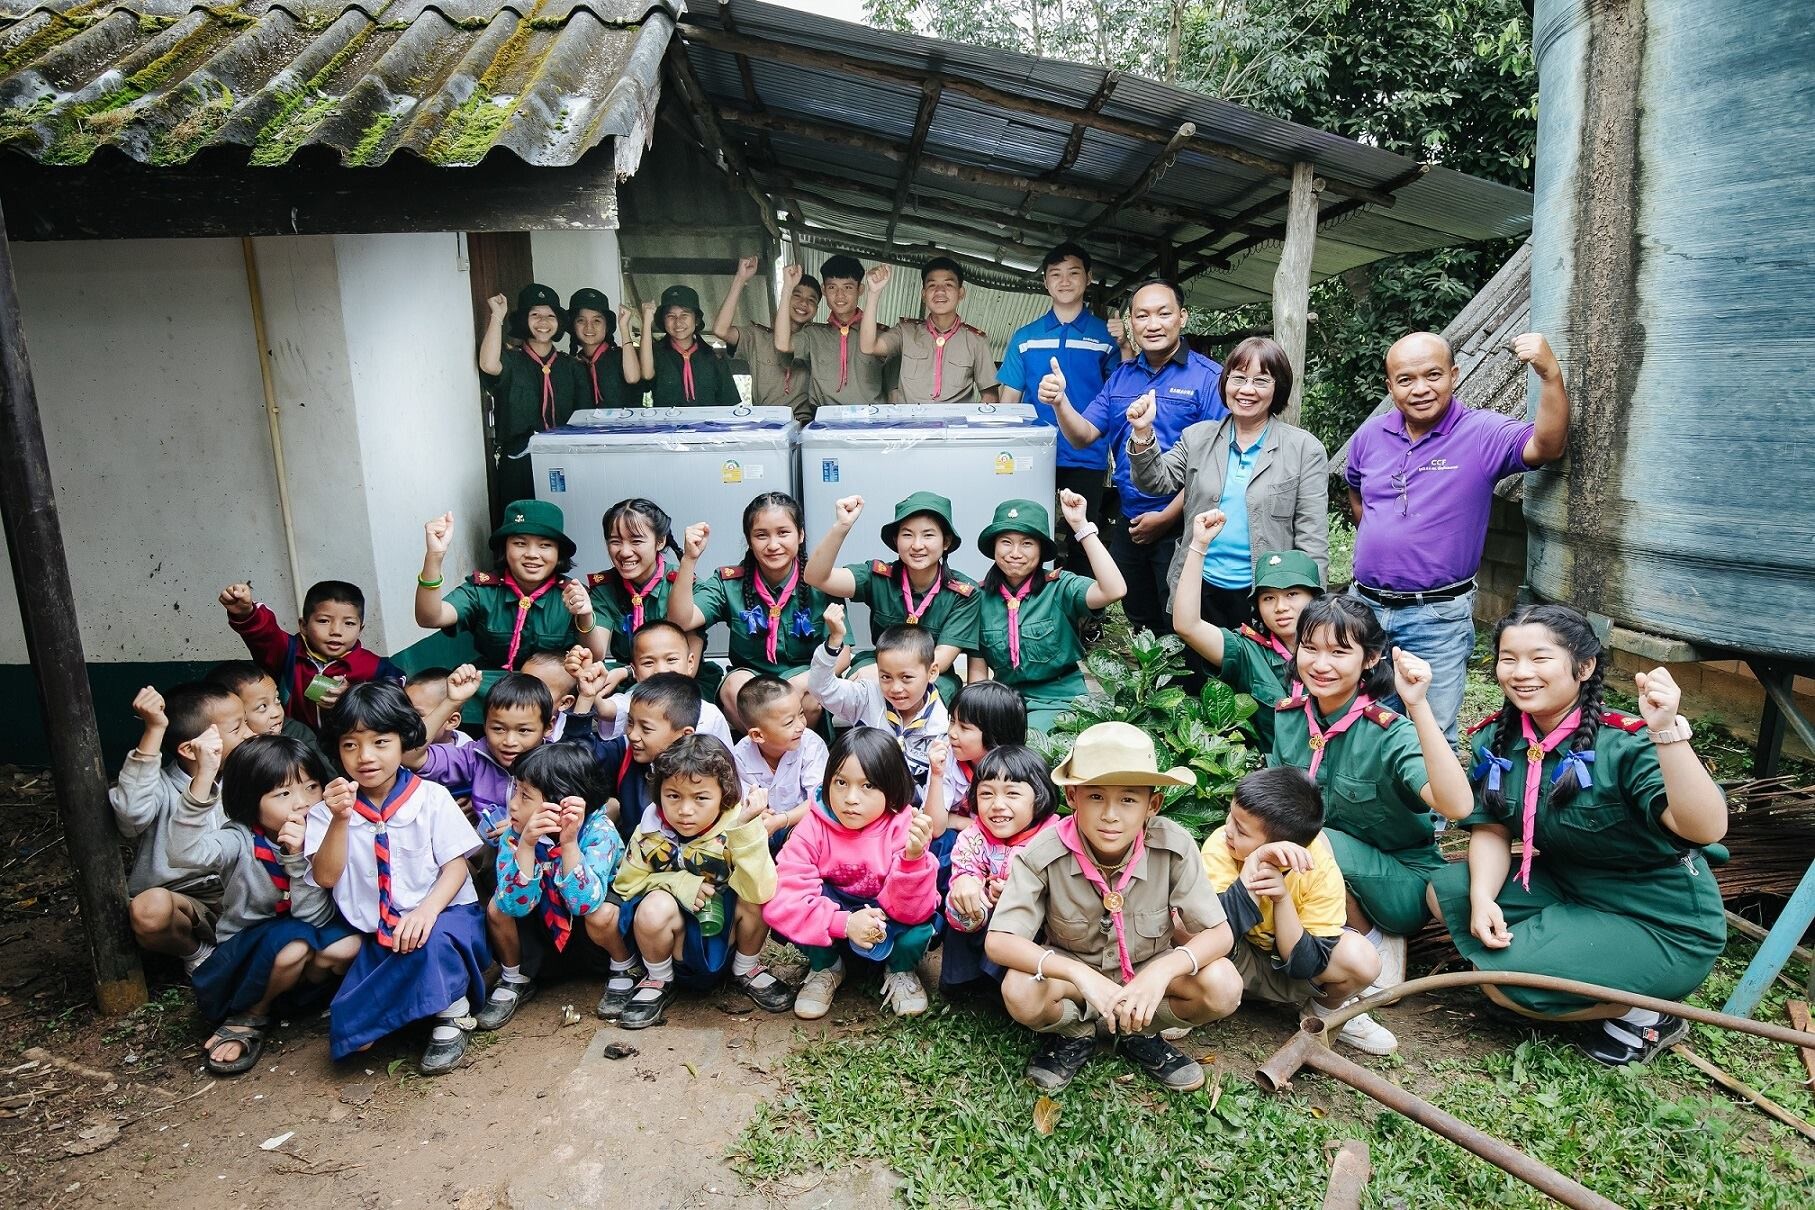 ซัมซุงส่งเสริมสุขอนามัยนักเรียนภาคเหนือ มอบเครื่องซักผ้าแก่ 4 โรงเรียน ภายใต้โครงการ "Samsung Love & Care